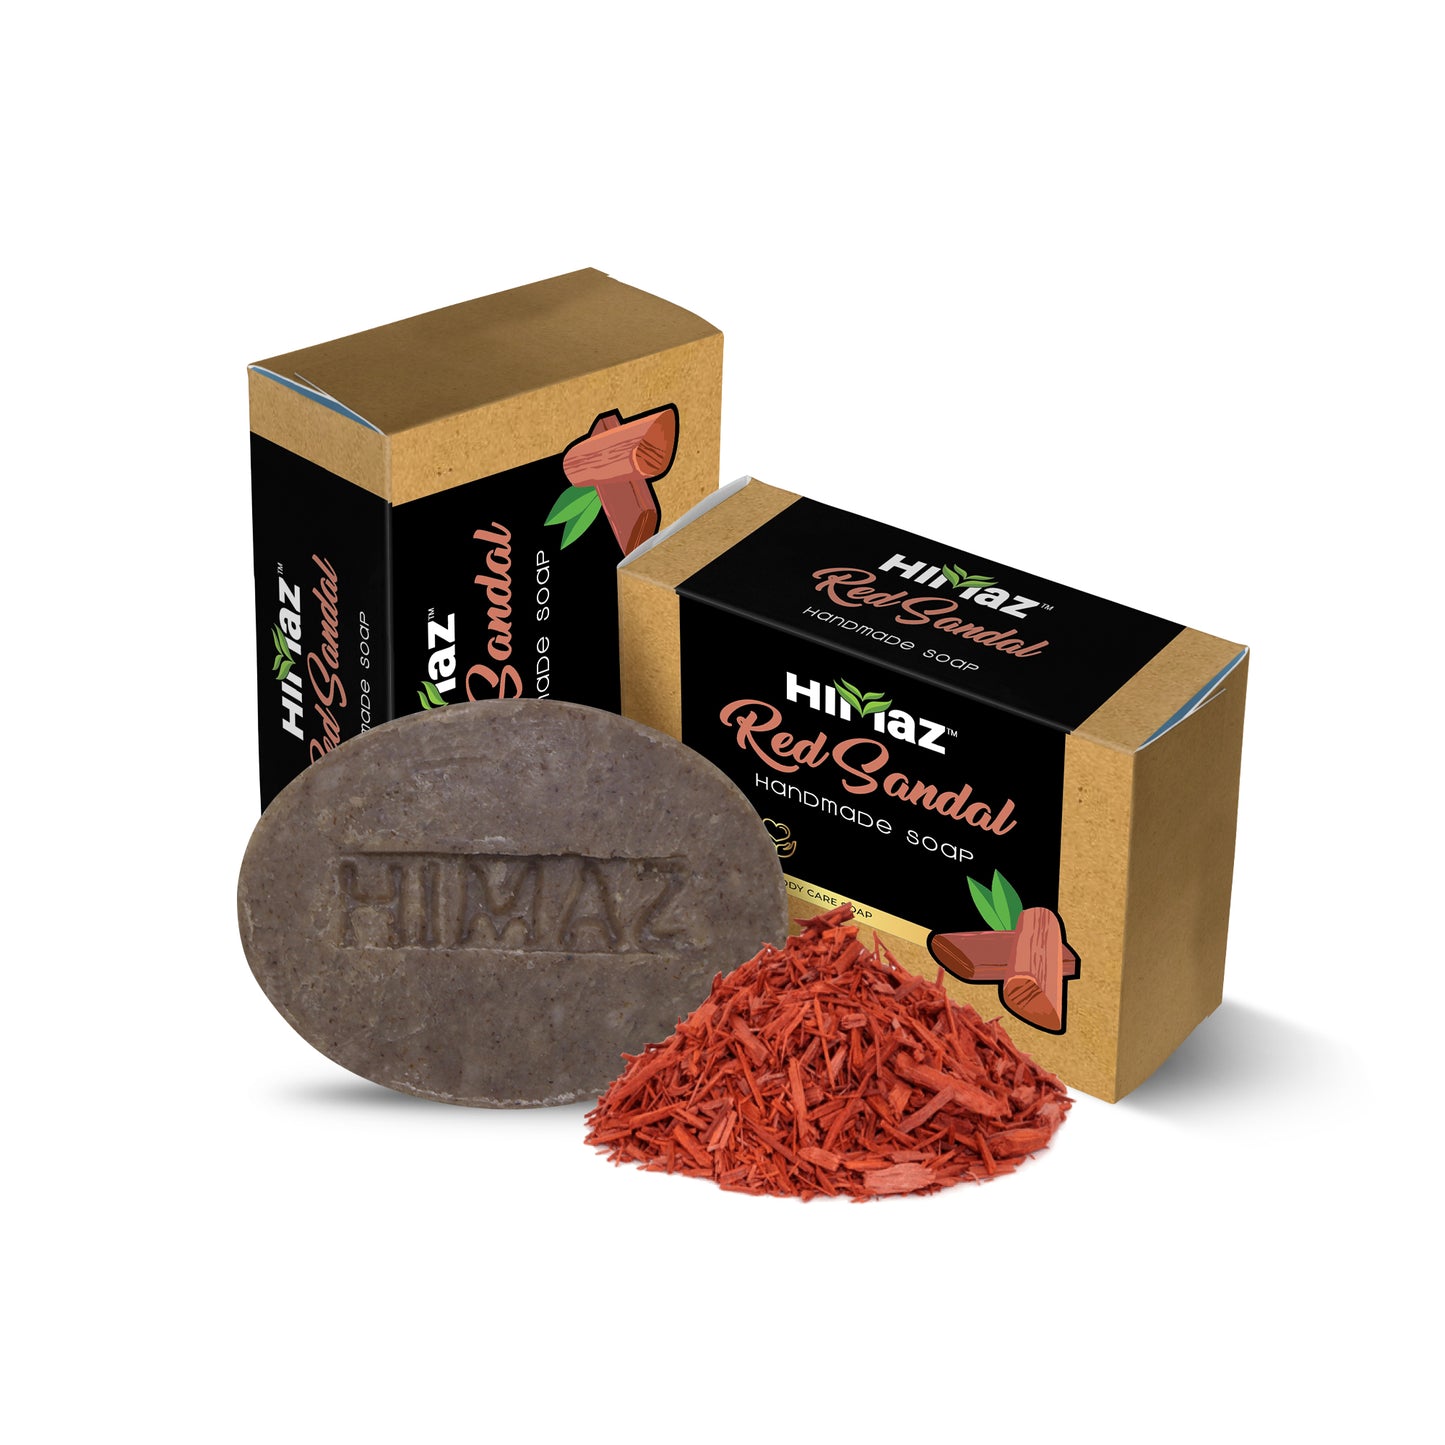 
                  
                    HIMAZ Red Sandal Handmade Soap (75g)
                  
                